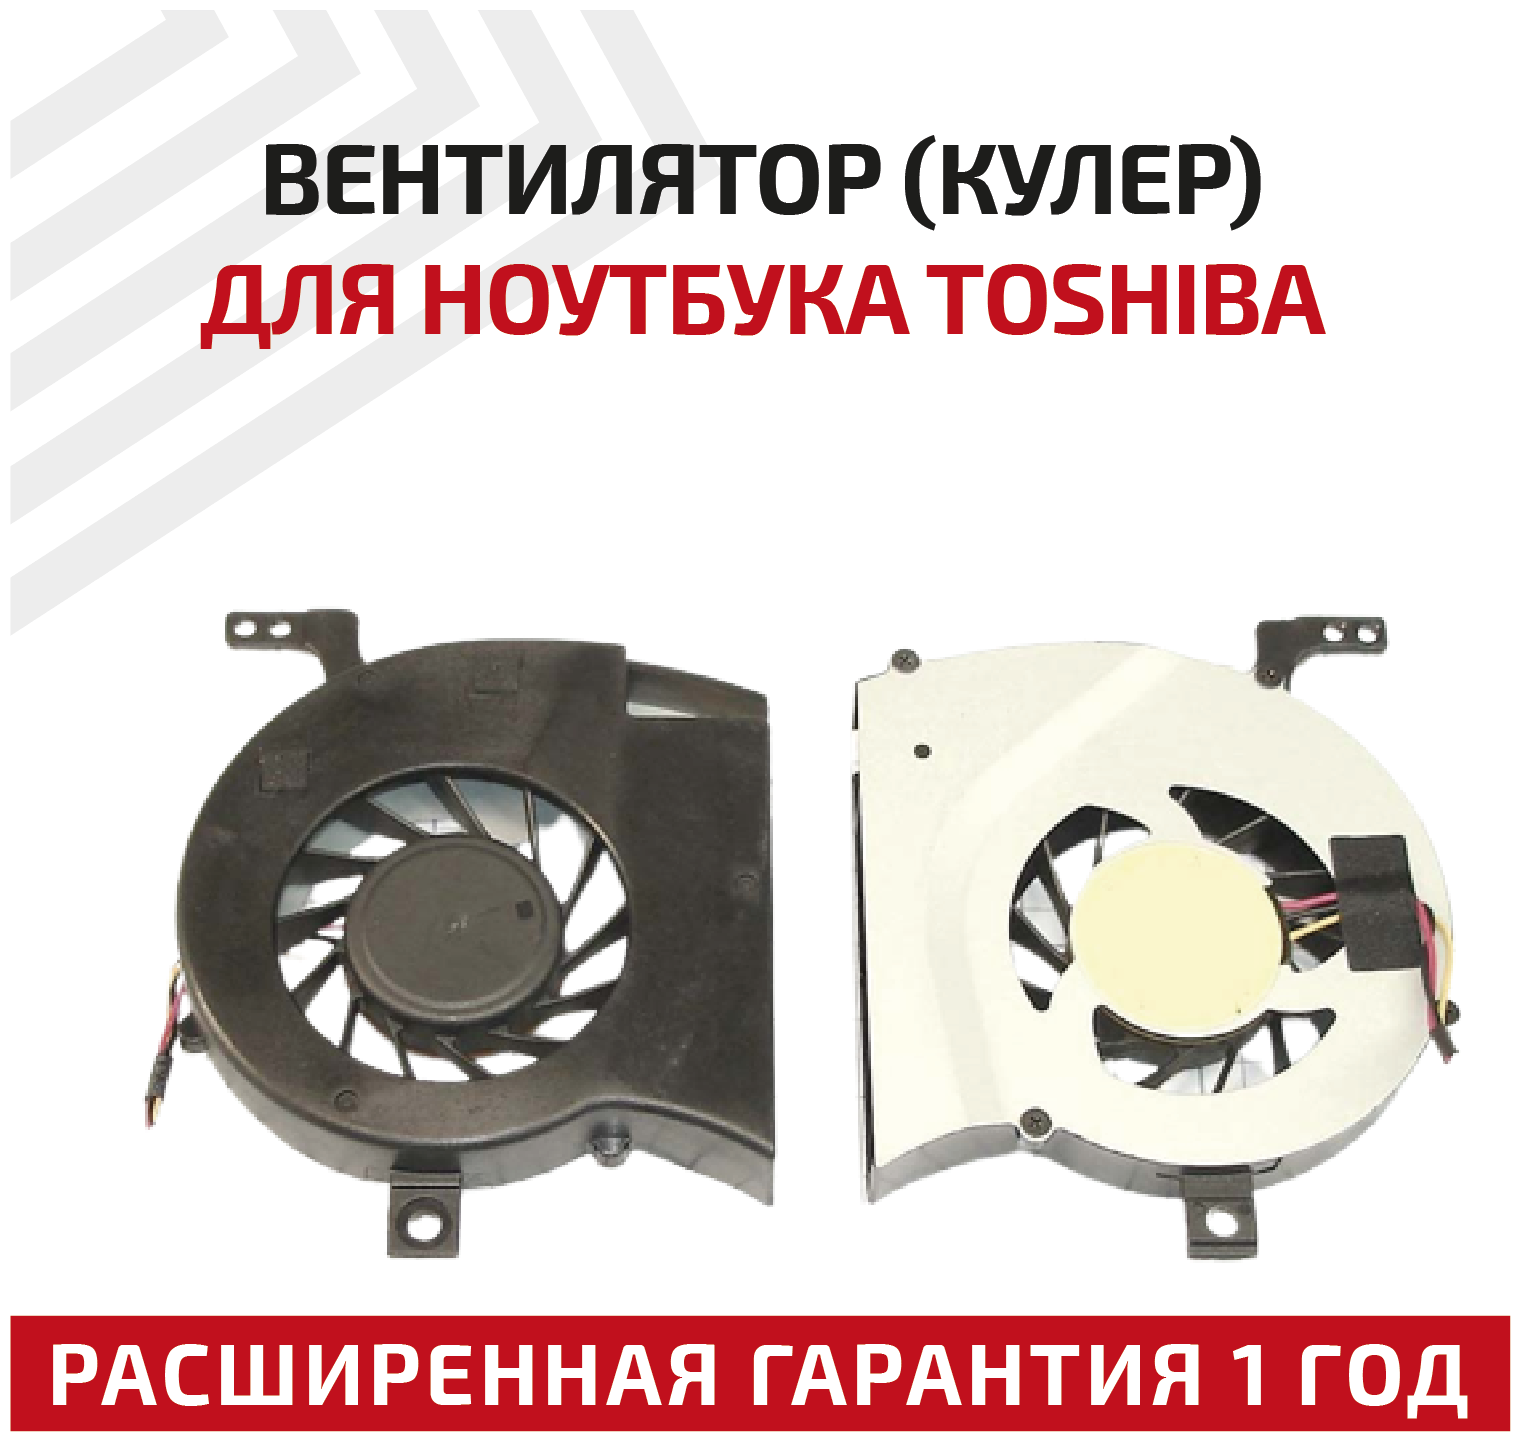 Вентилятор (кулер) для ноутбука Toshiba Satellite L600 L645 L640 VER-1 L600D L630 L645D C600D C630 C640 L635 3-pin